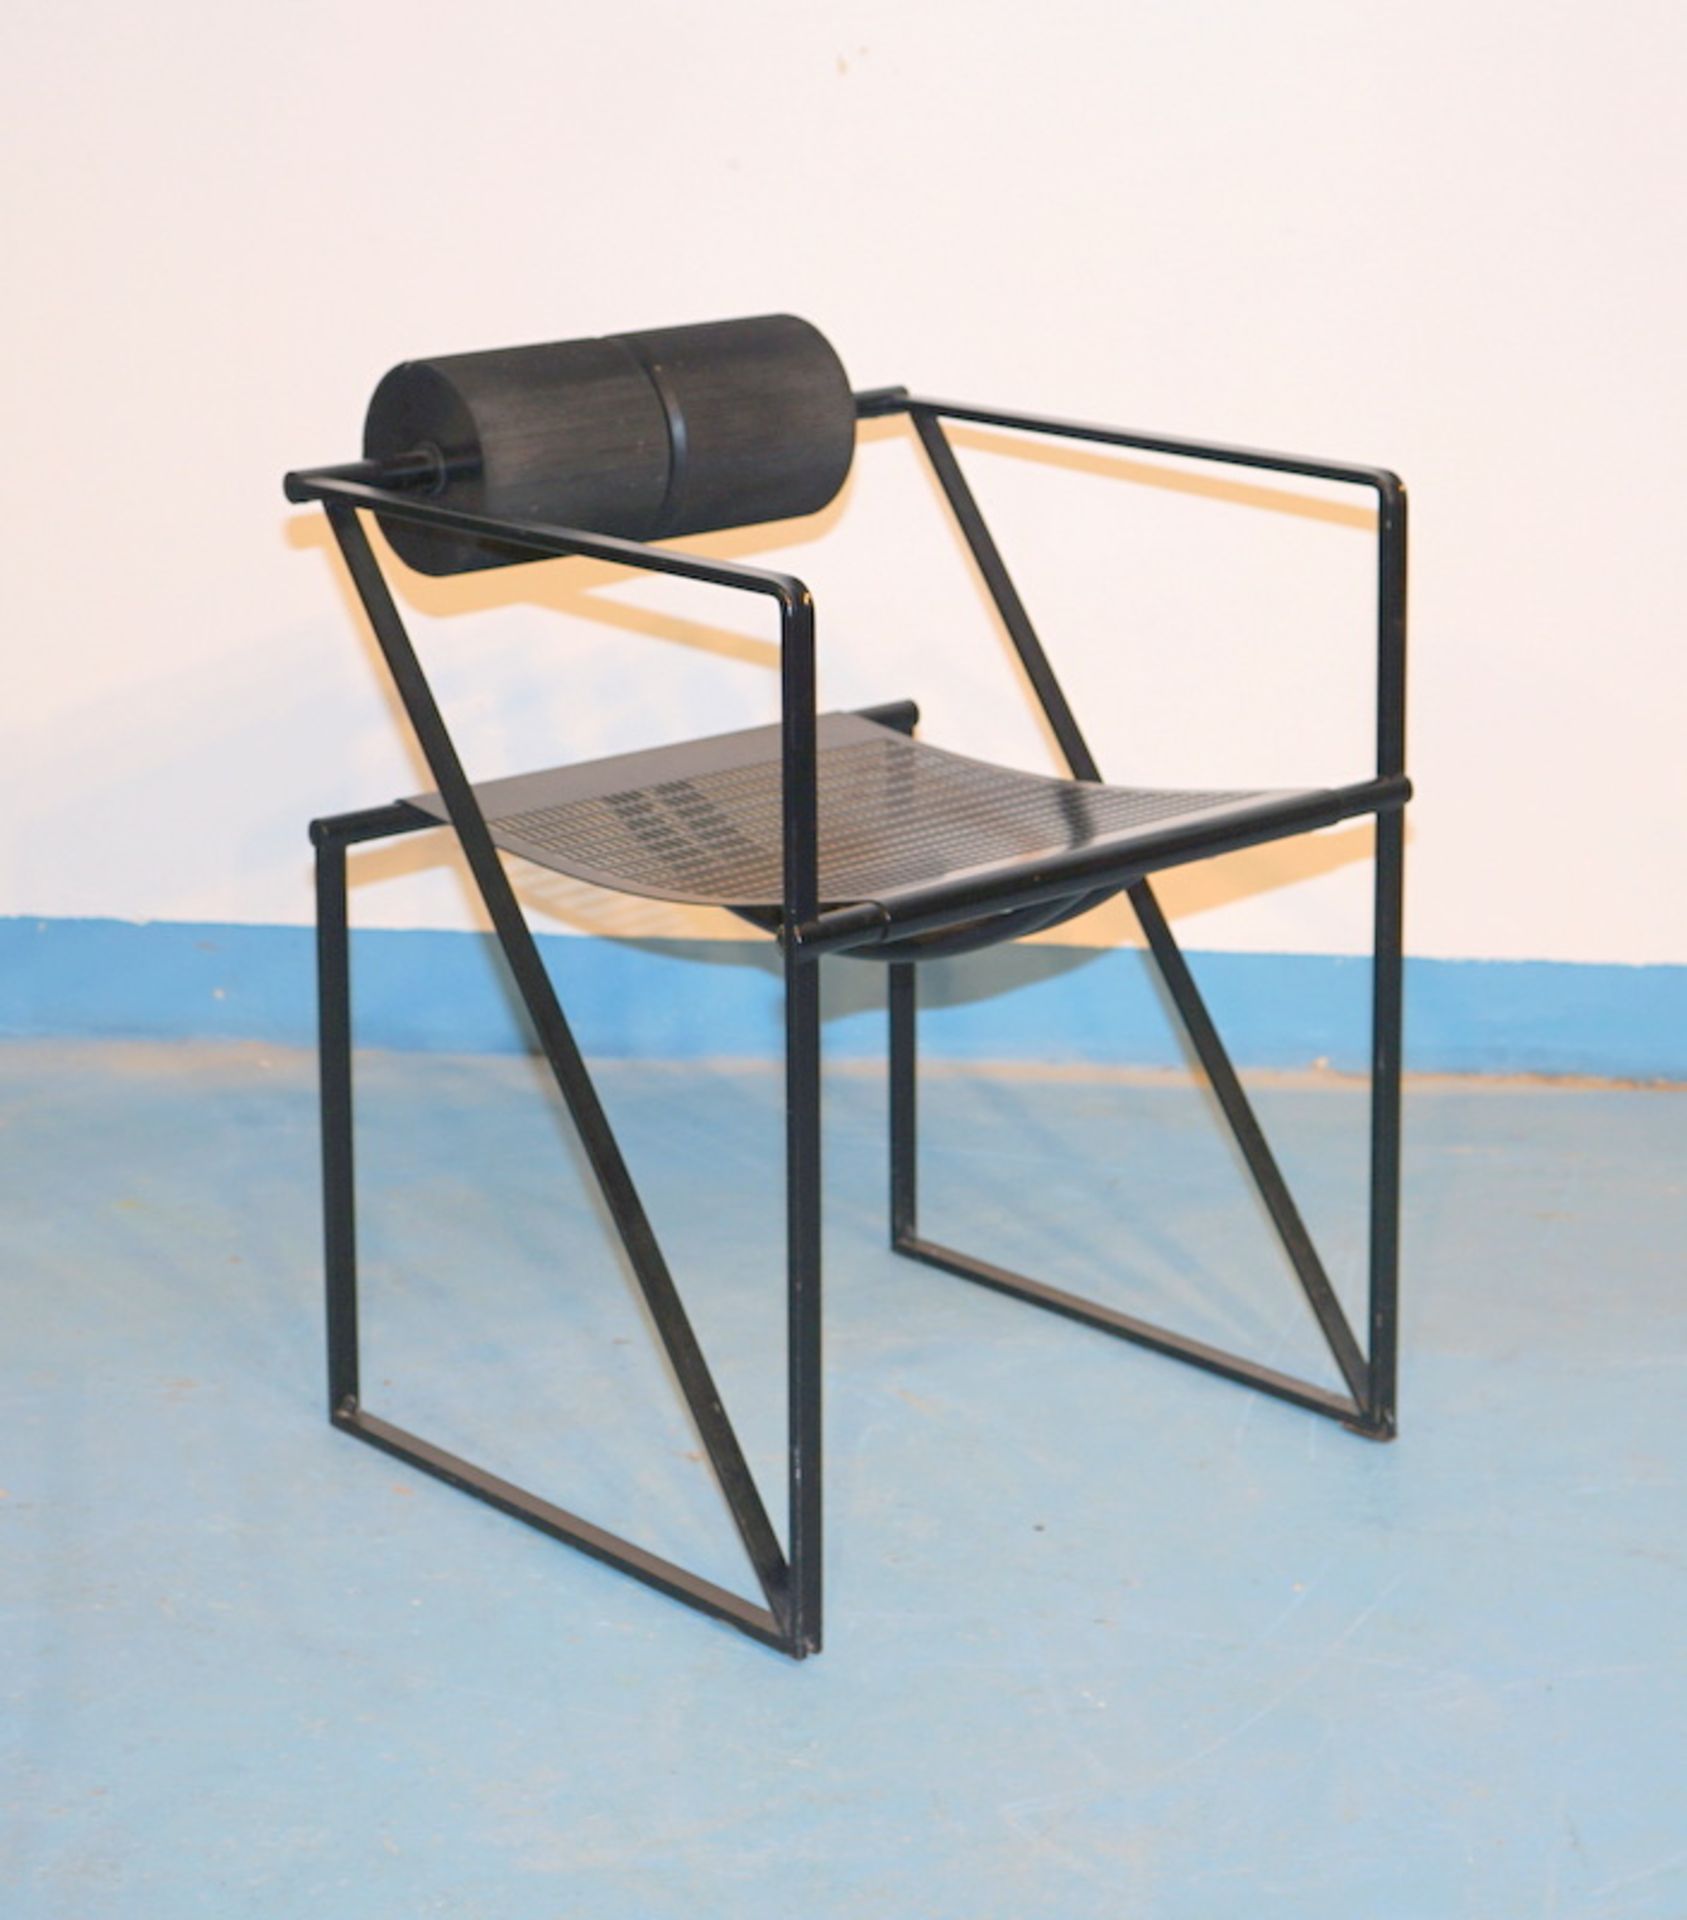 Botta, Mario: Stuhl "Seconda" für Alias Entwurf von 1982